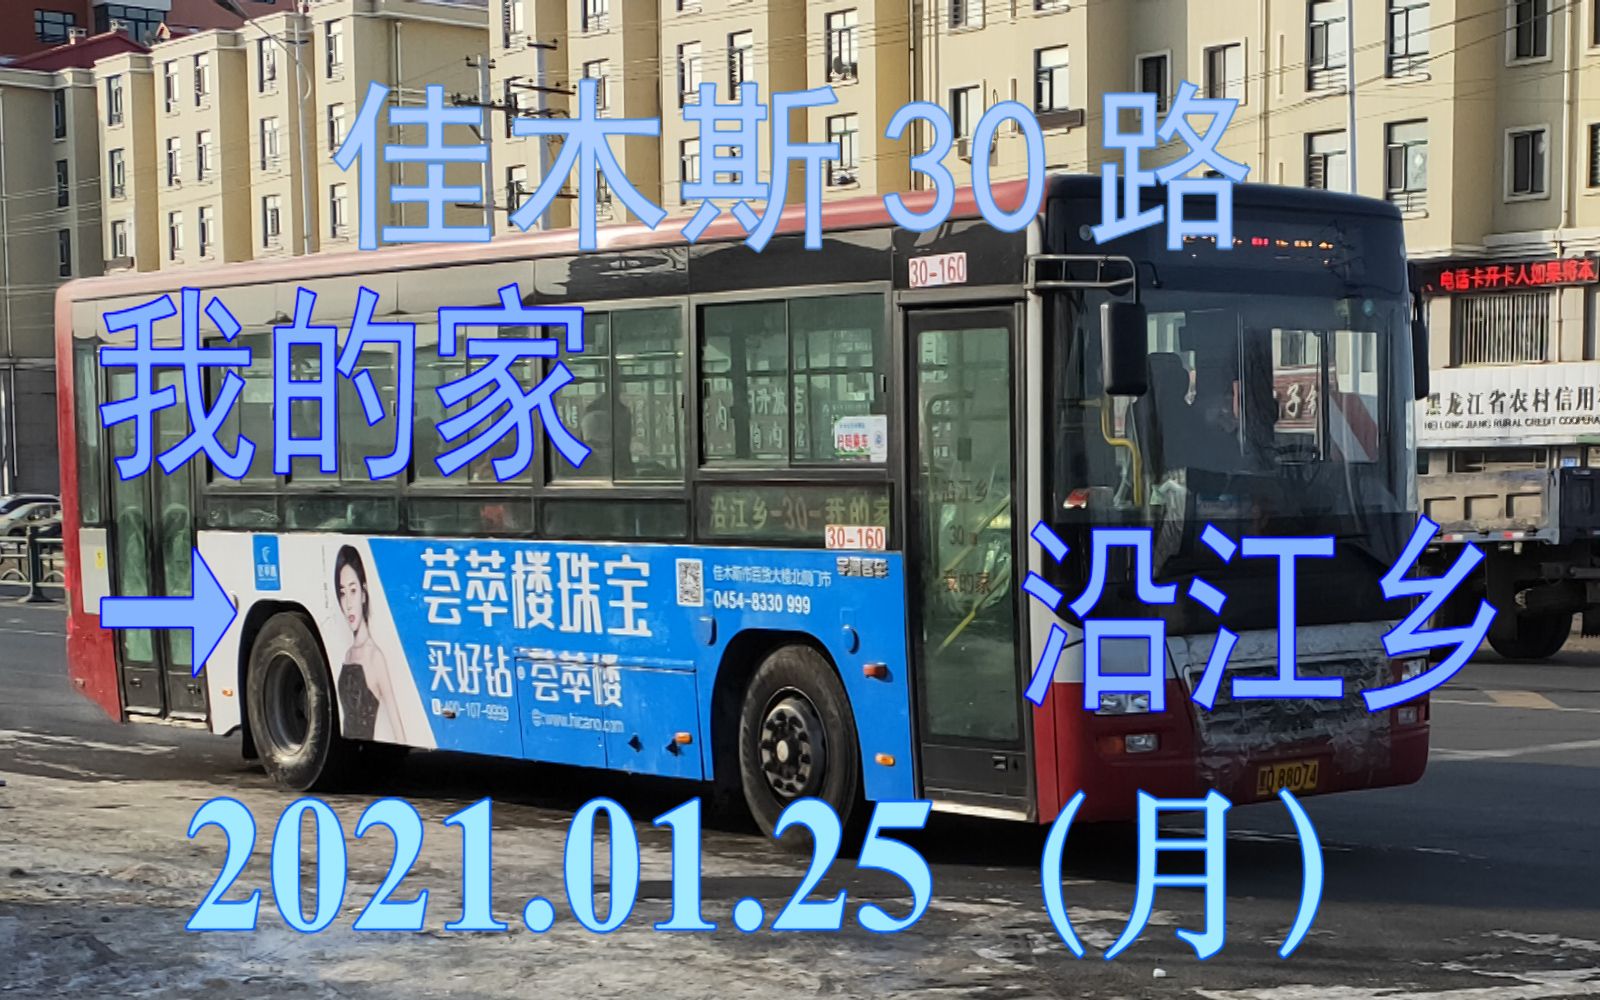 25 佳木斯公交30路(我的家→沿江乡)上行方向雪景pov